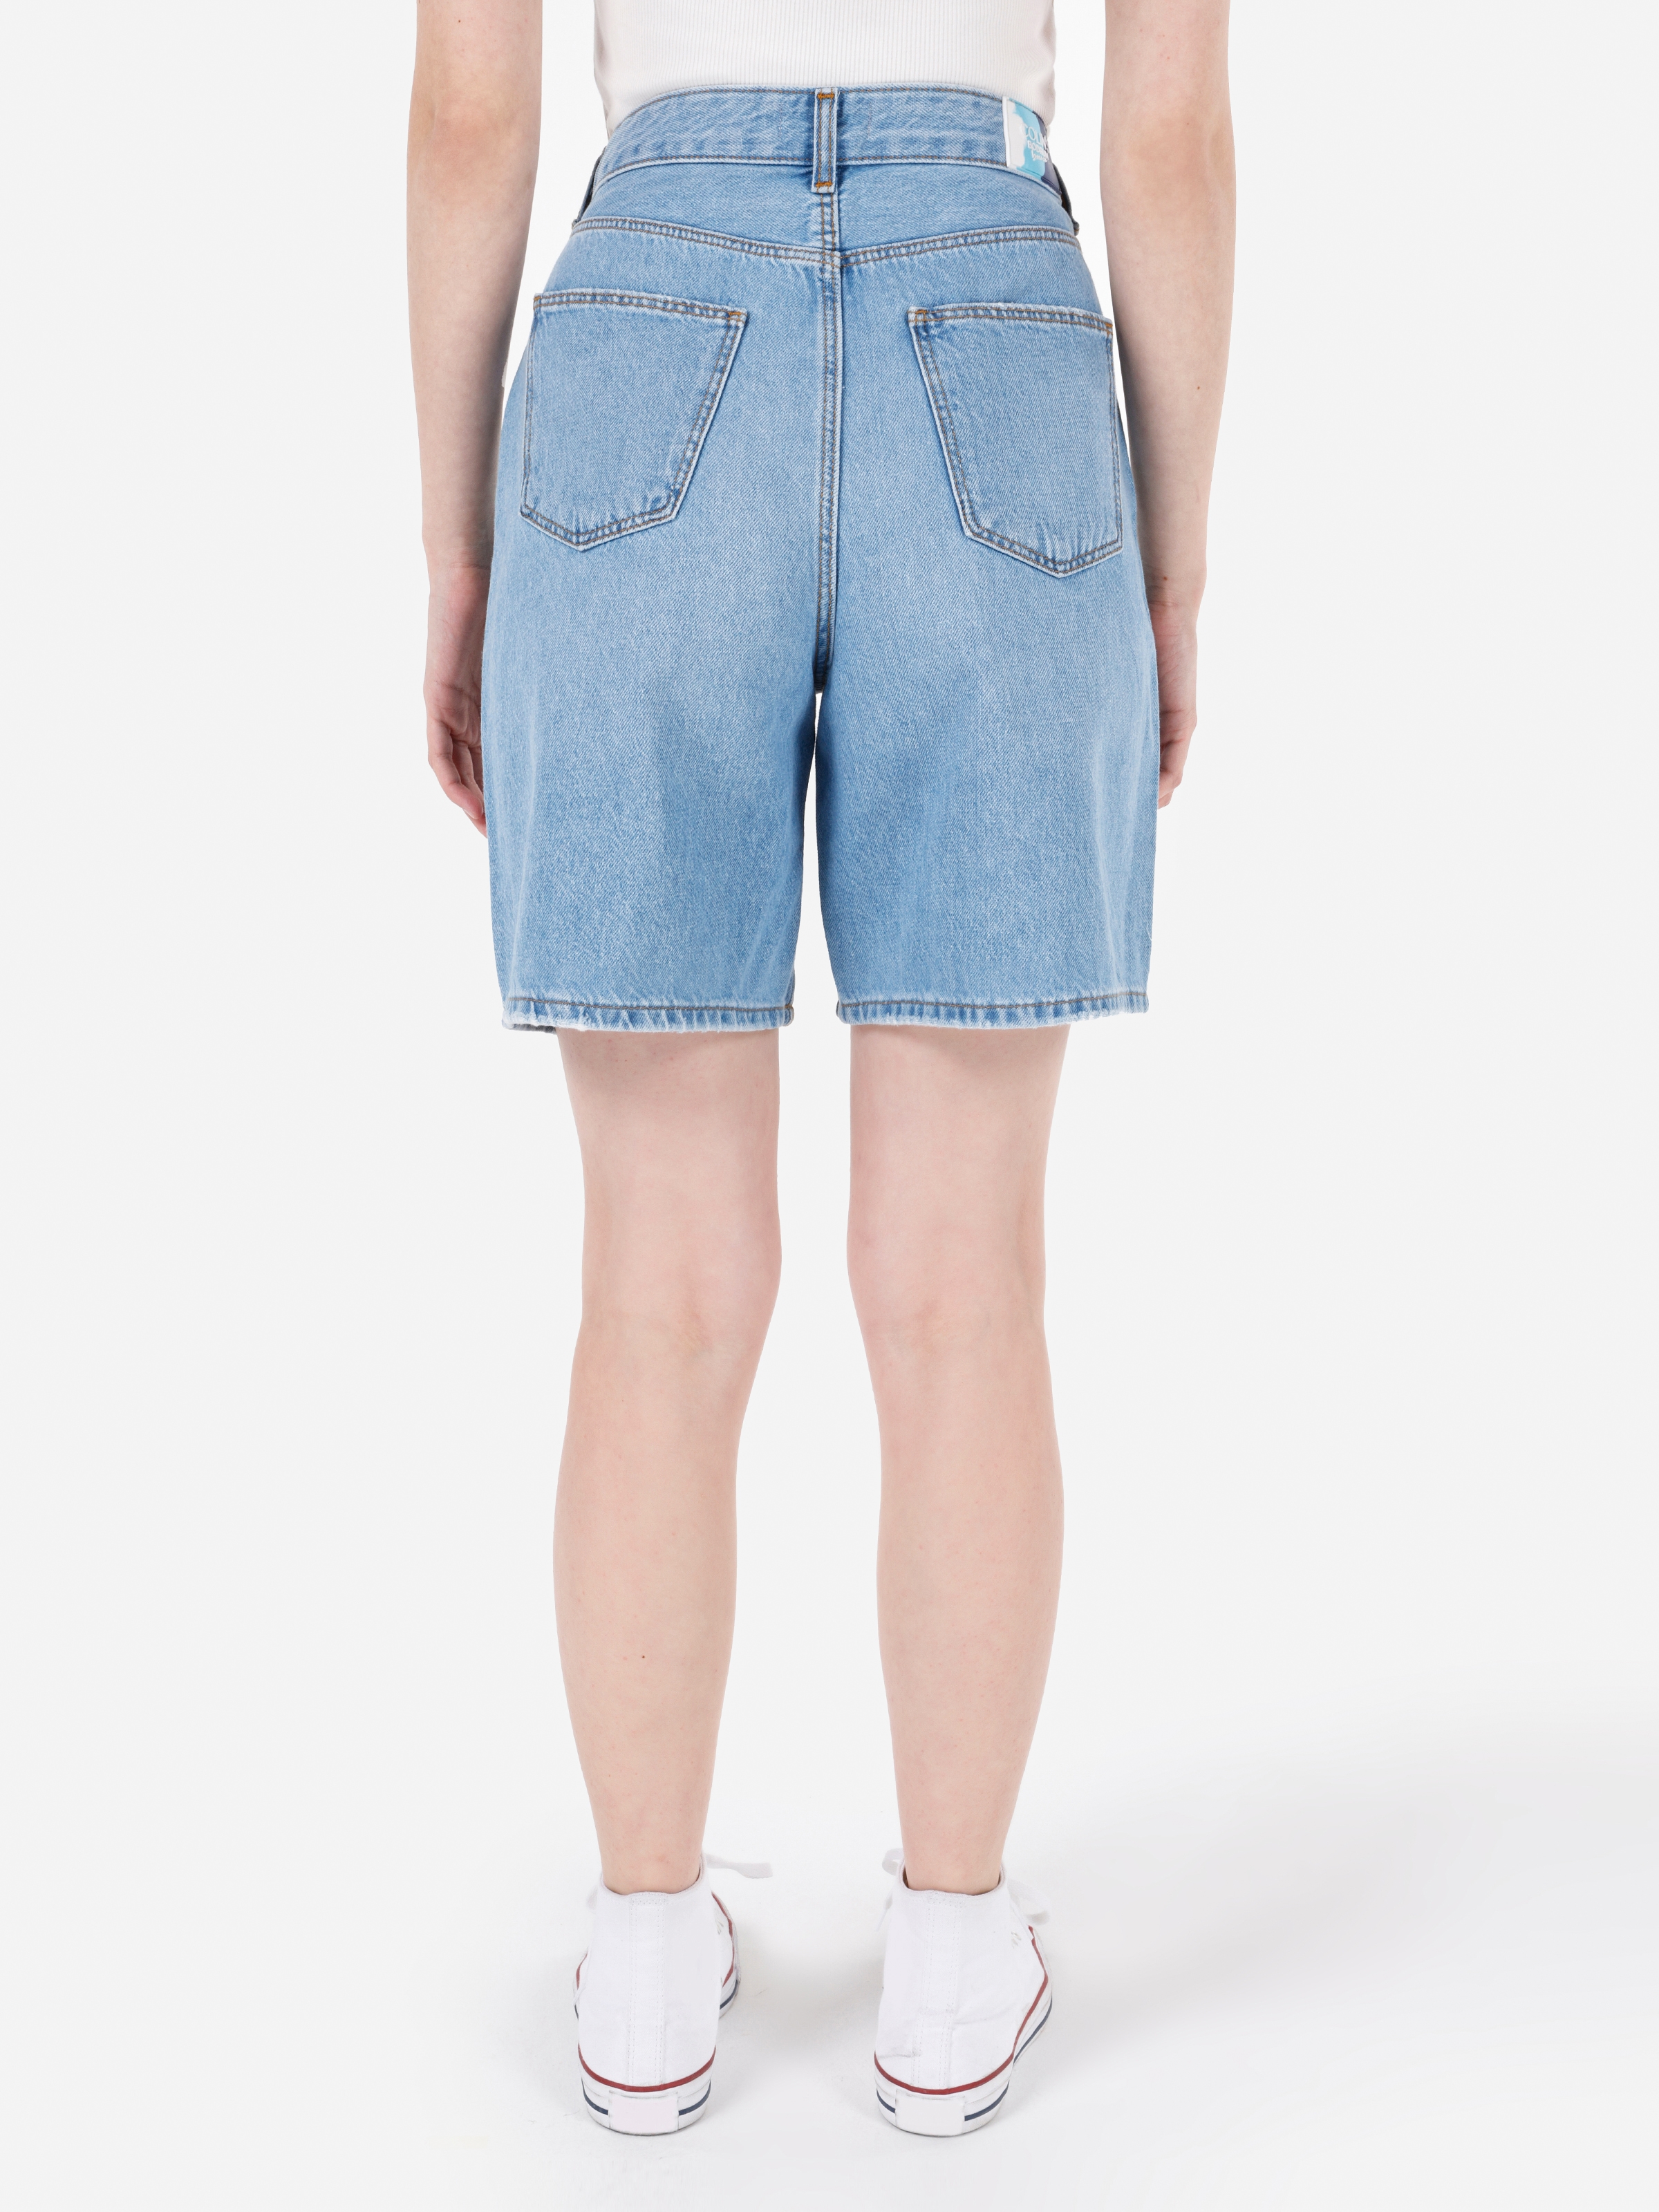 Afișați detalii pentru Short / Pantaloni Scurti De Dama Albastru Regular Fit  